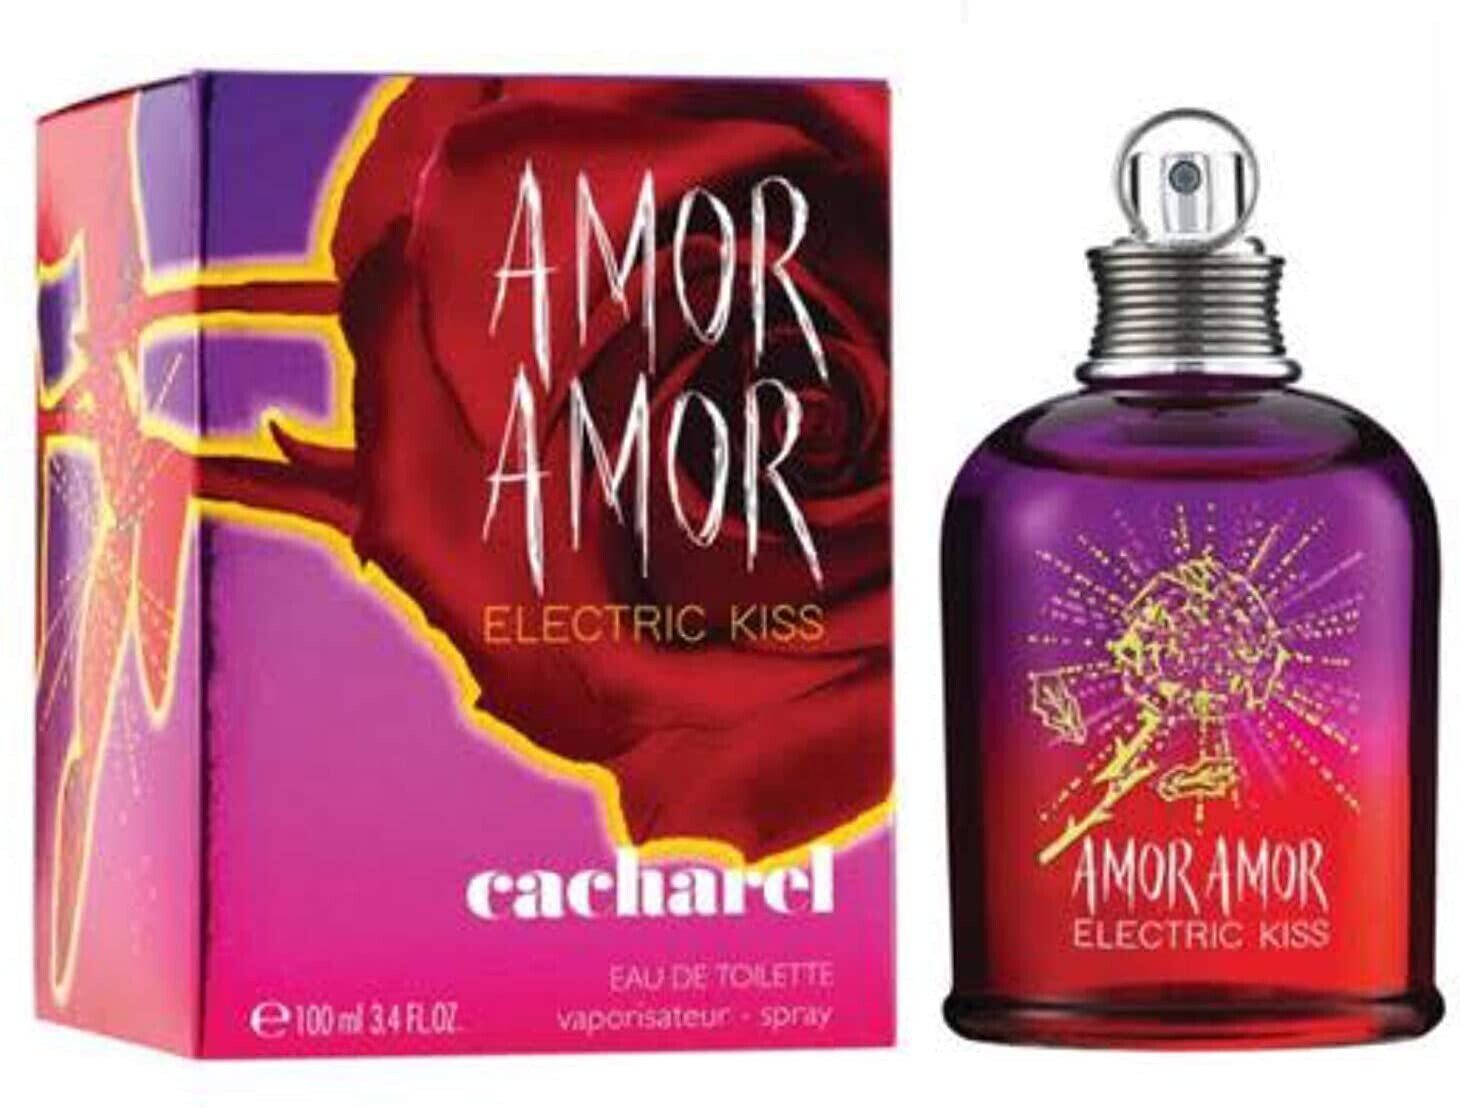 Photos - Women's Fragrance Cacharel Amor Amor Electric Kiss Eau de Toilette 100ml 